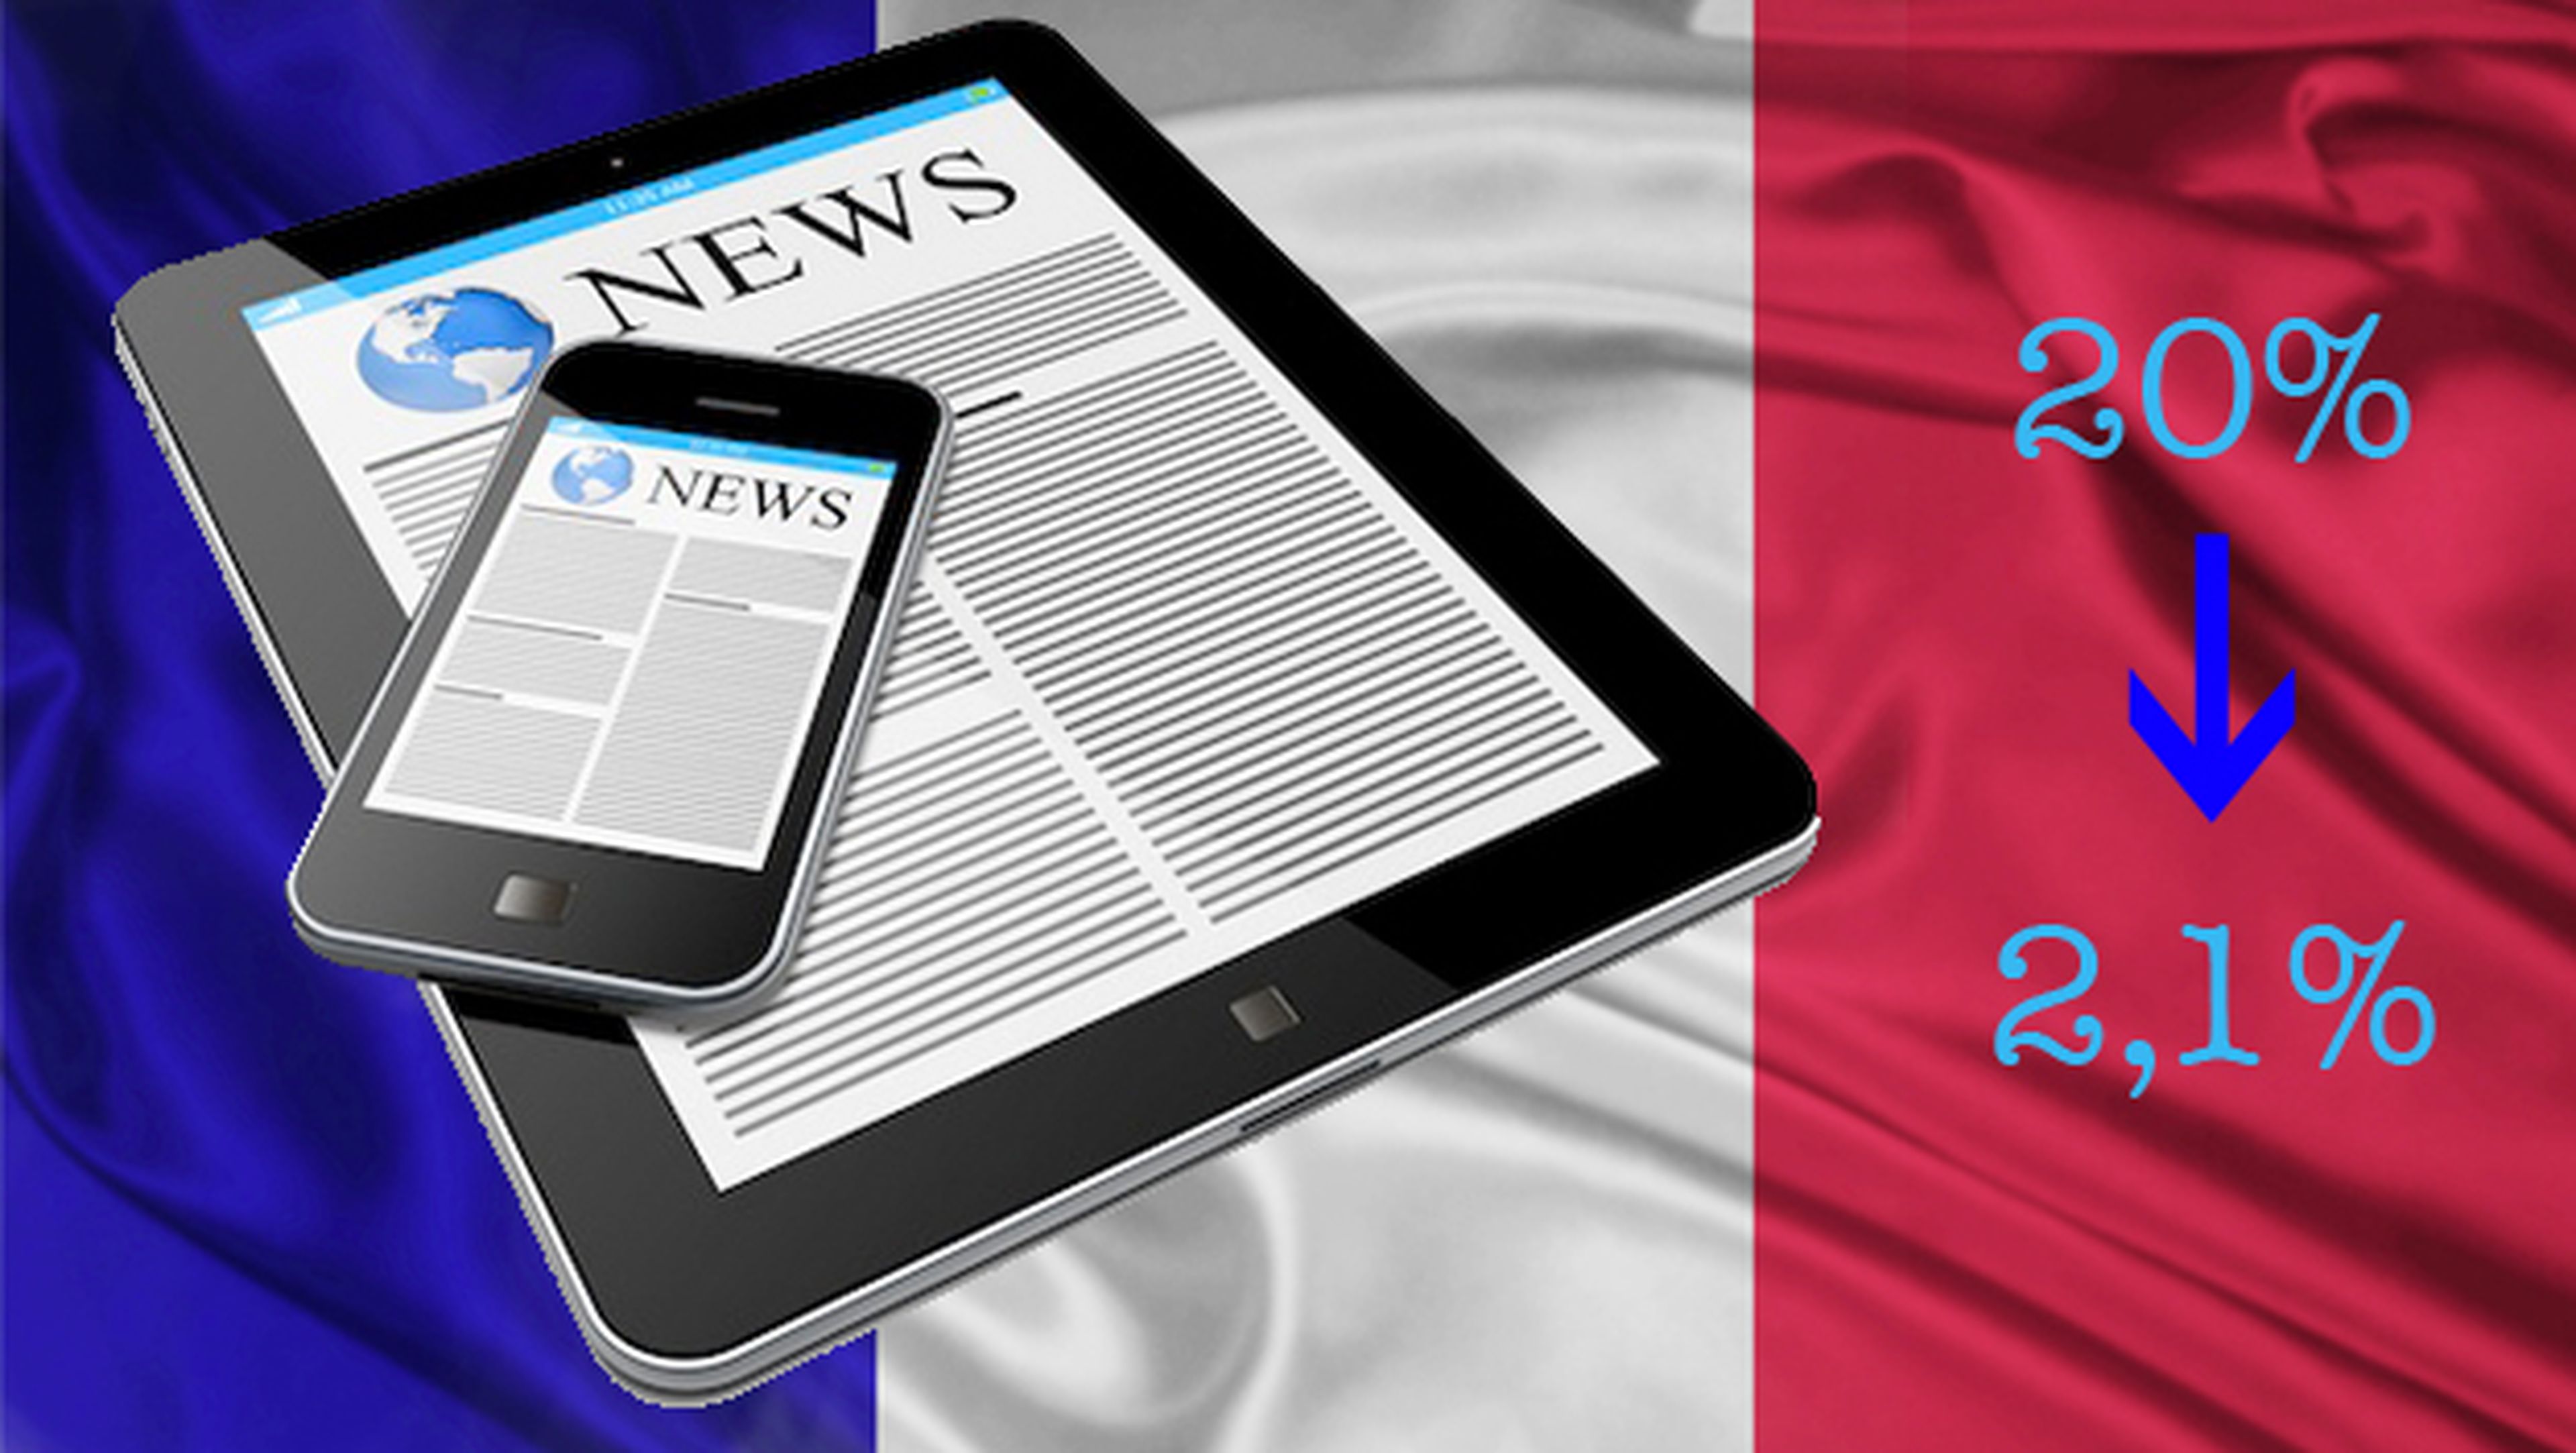 Francia baja el IVA de la prensa digital del 20% al 2,1%